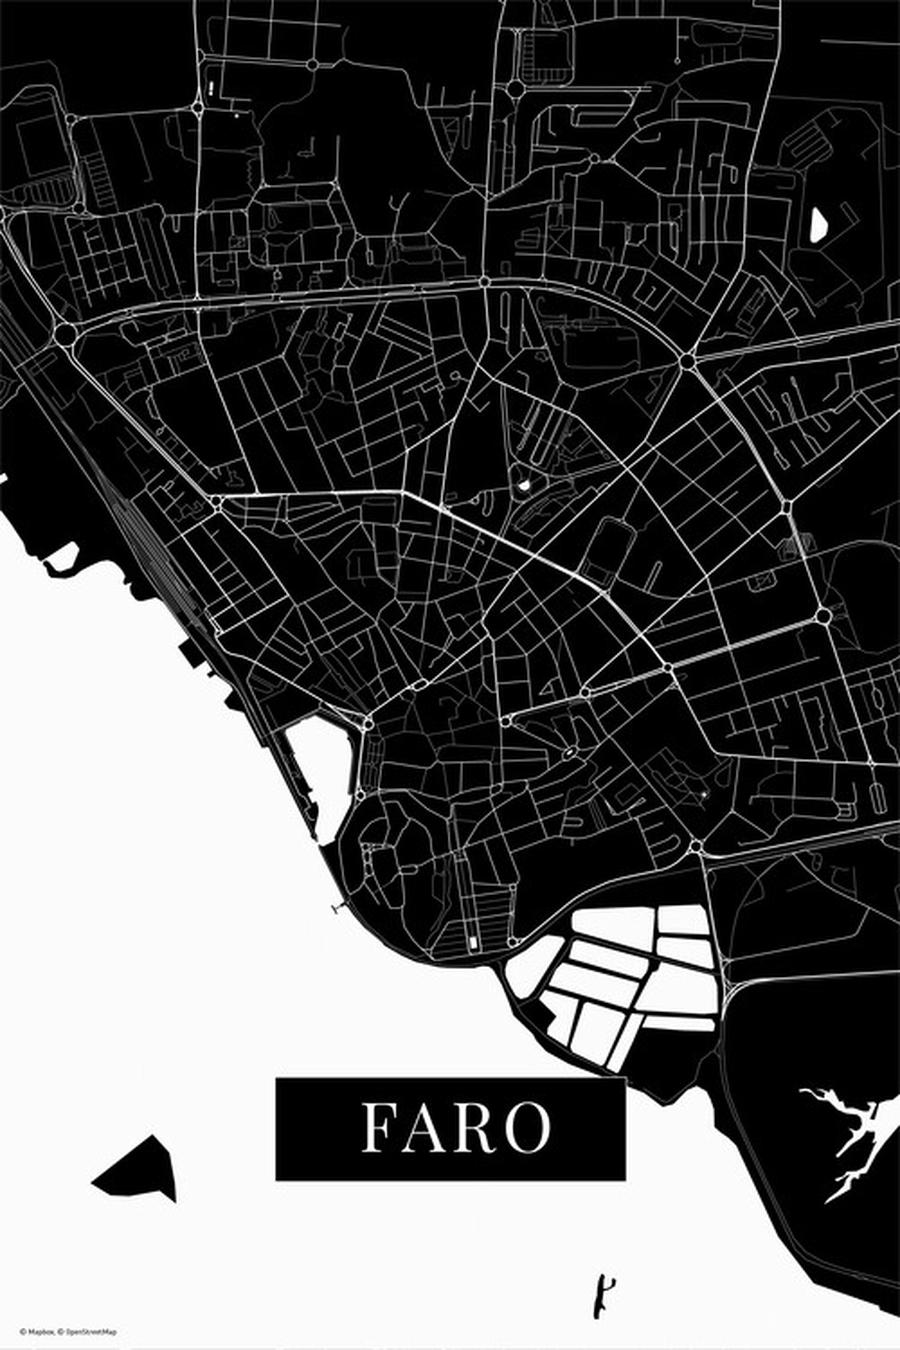 Mapa Faro black,